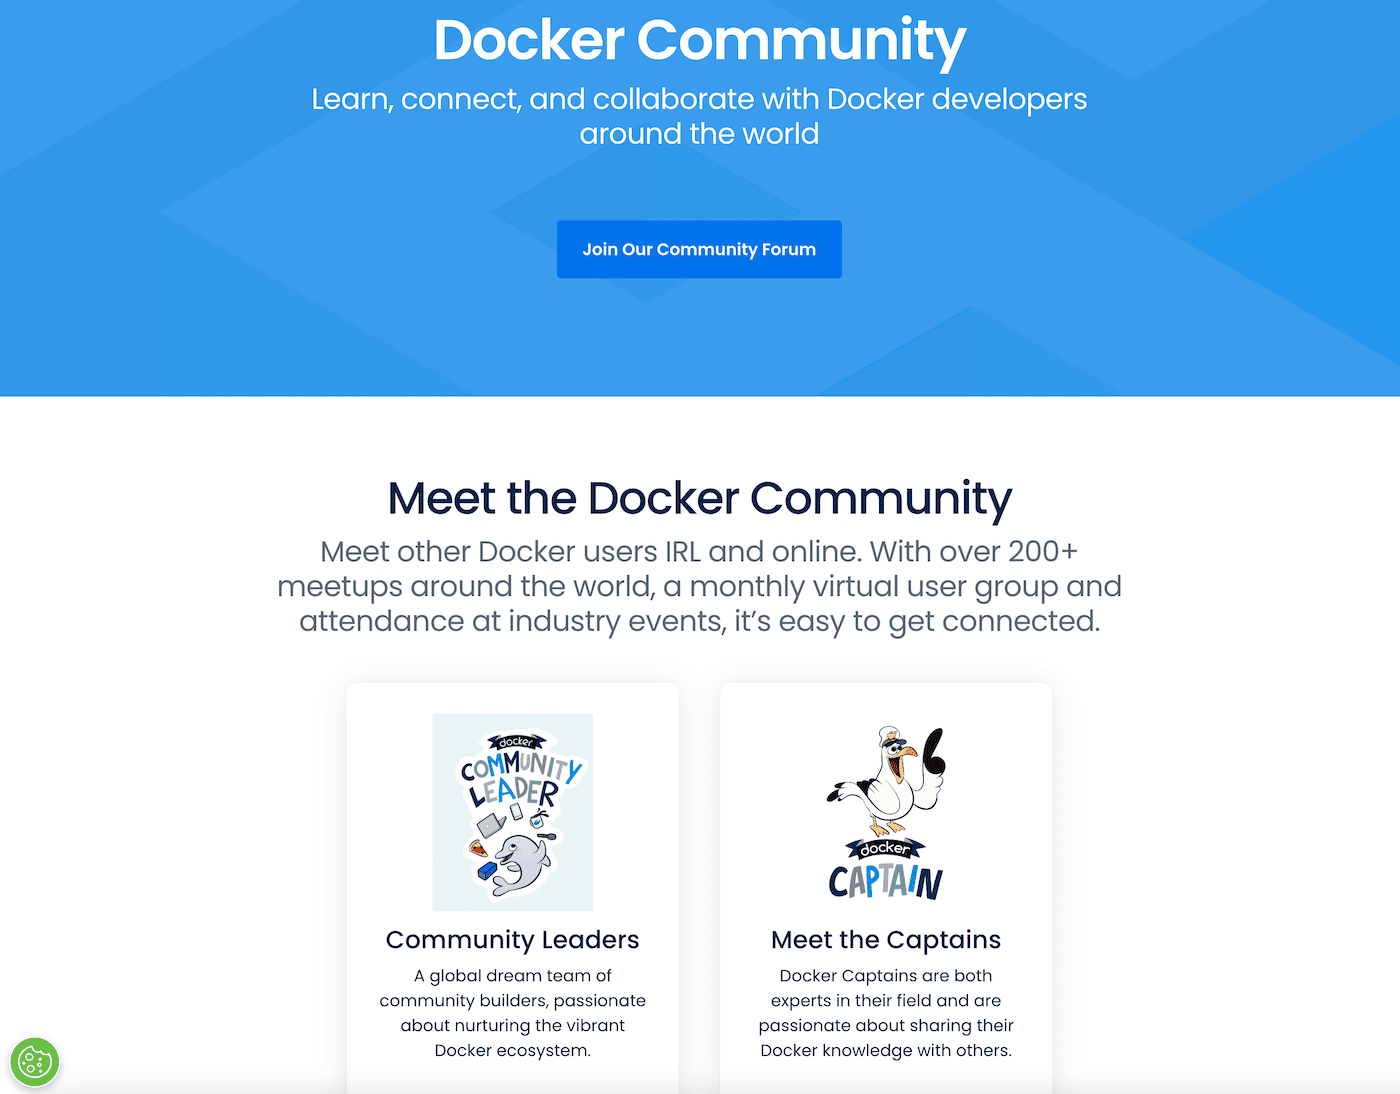 Die Homepage der Docker Community